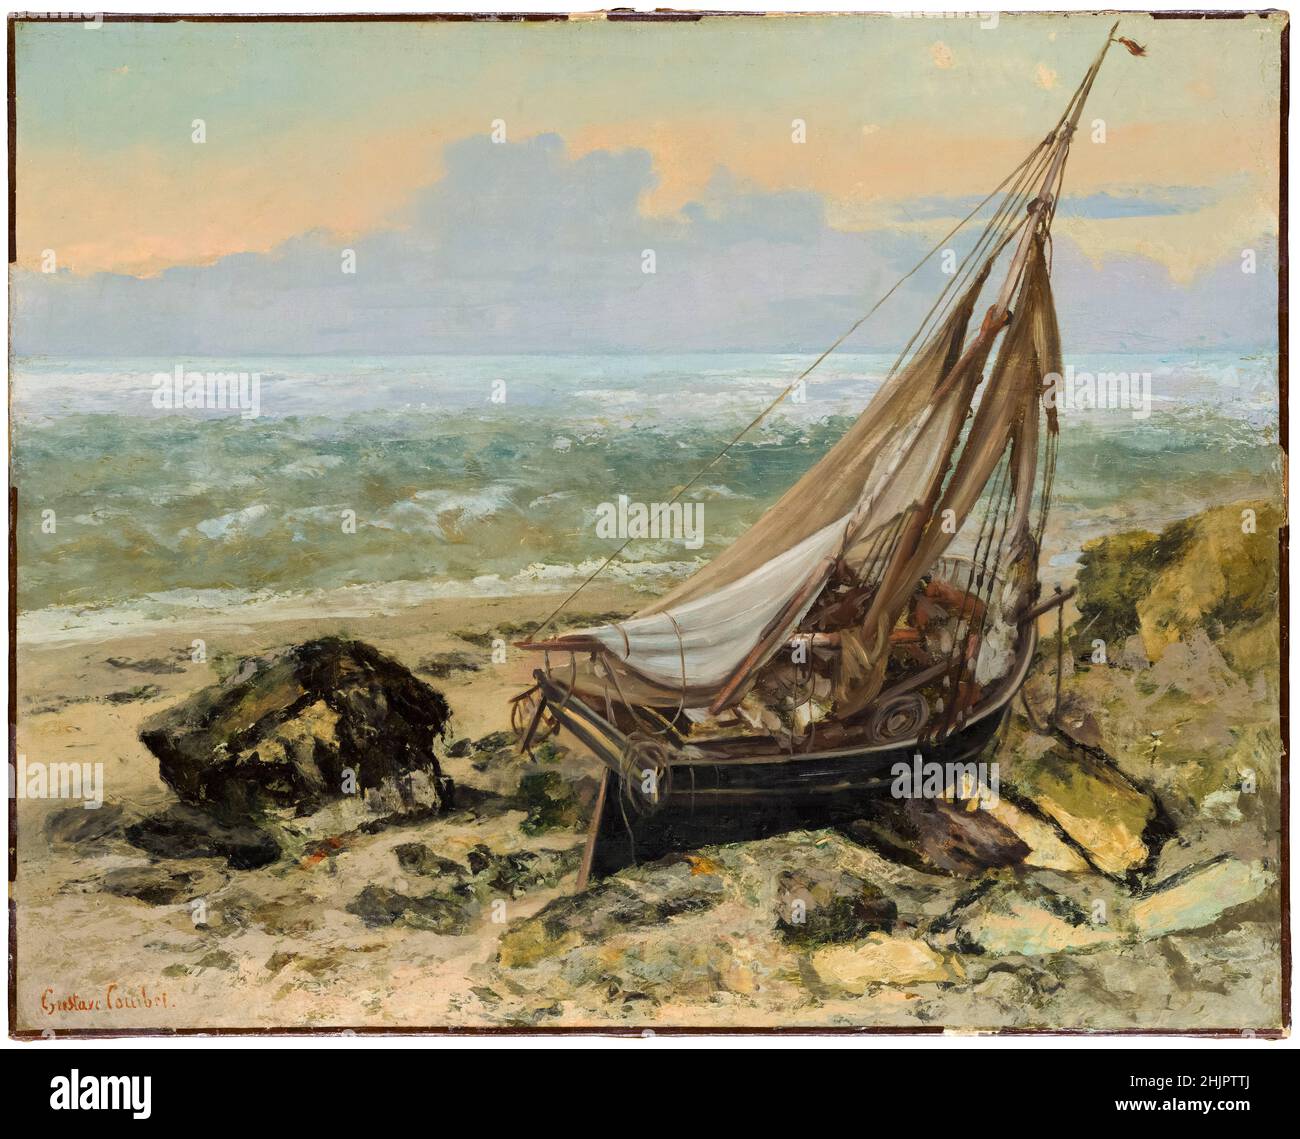 Le bateau de pêche, peinture de Gustave Courbet, 1865 Banque D'Images